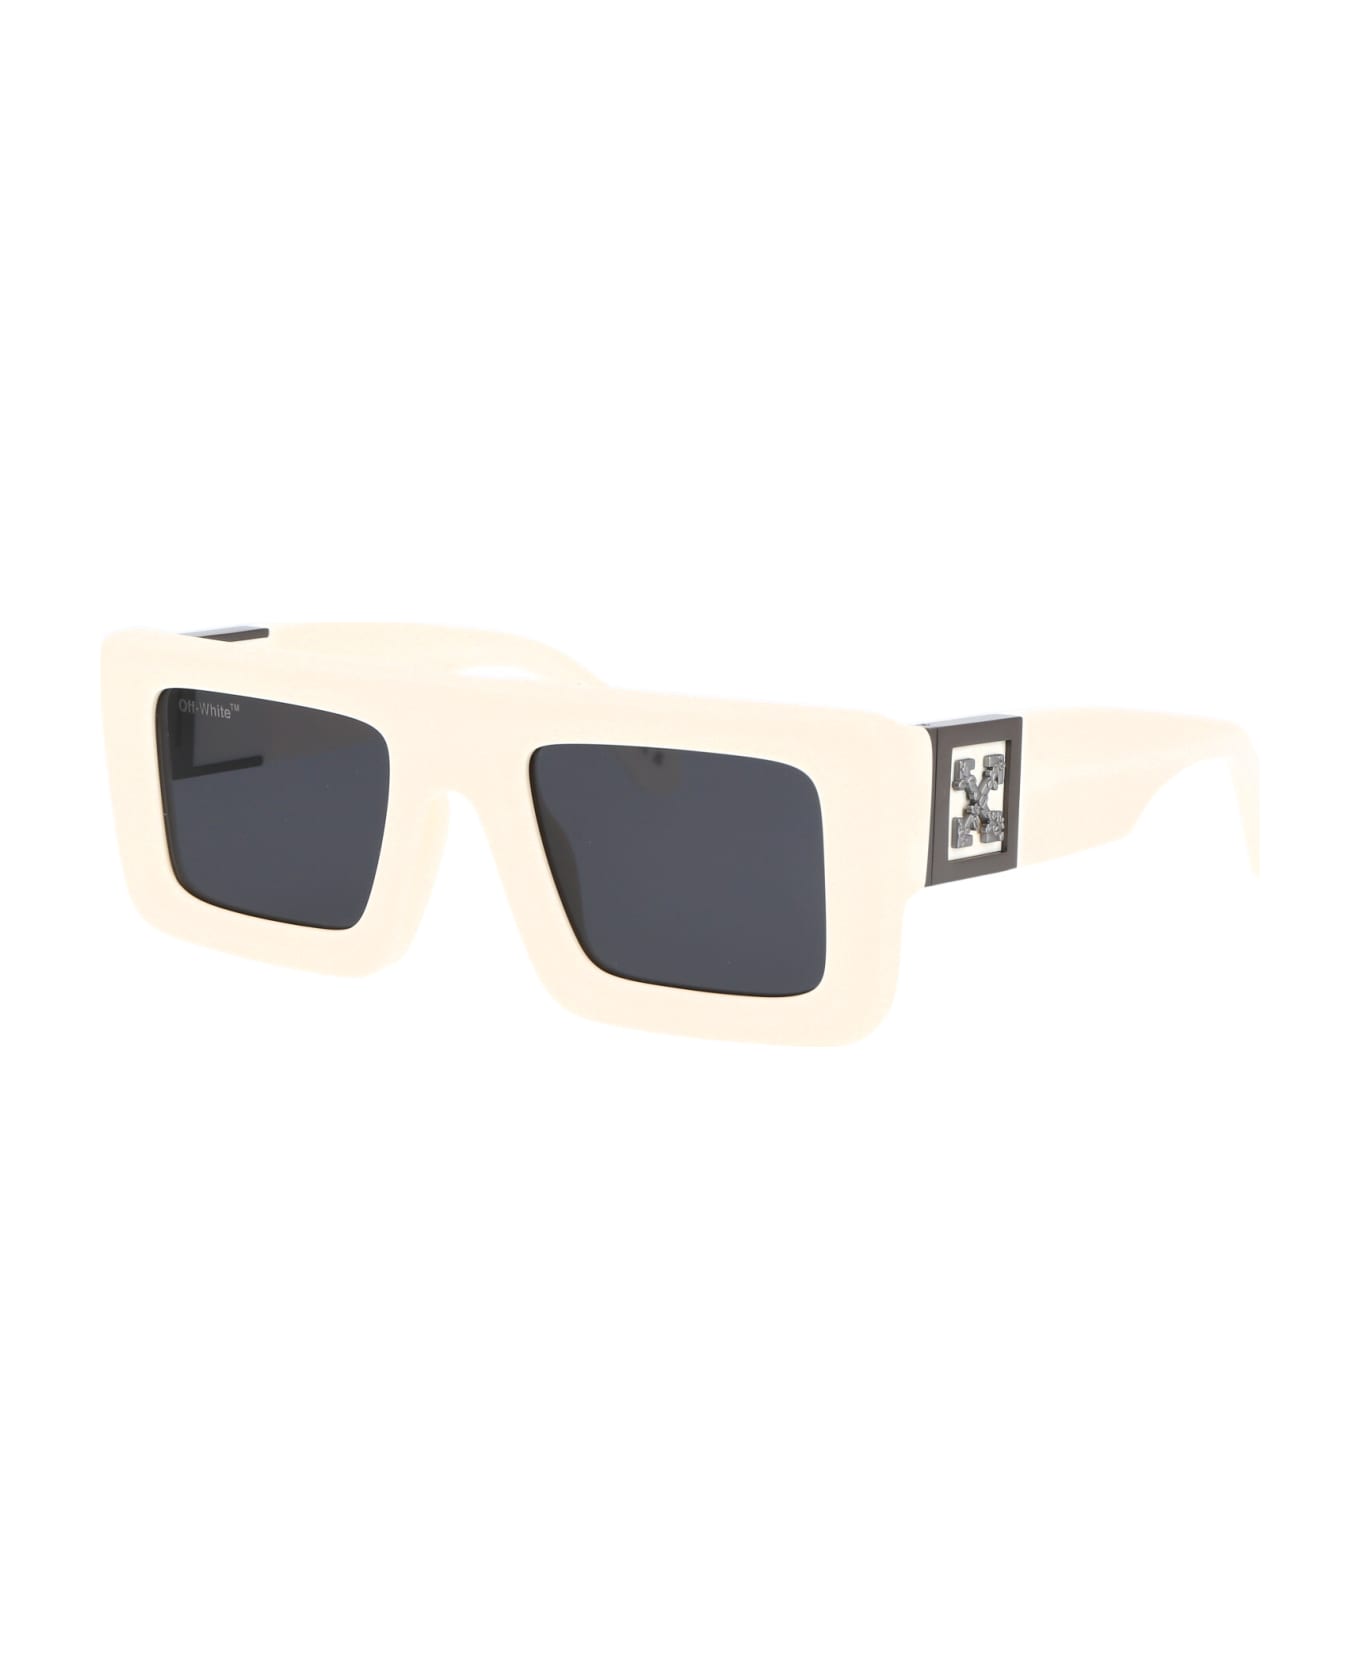 Off-White Leonardo Sunglasses - 0107 WHITE DARK GREY